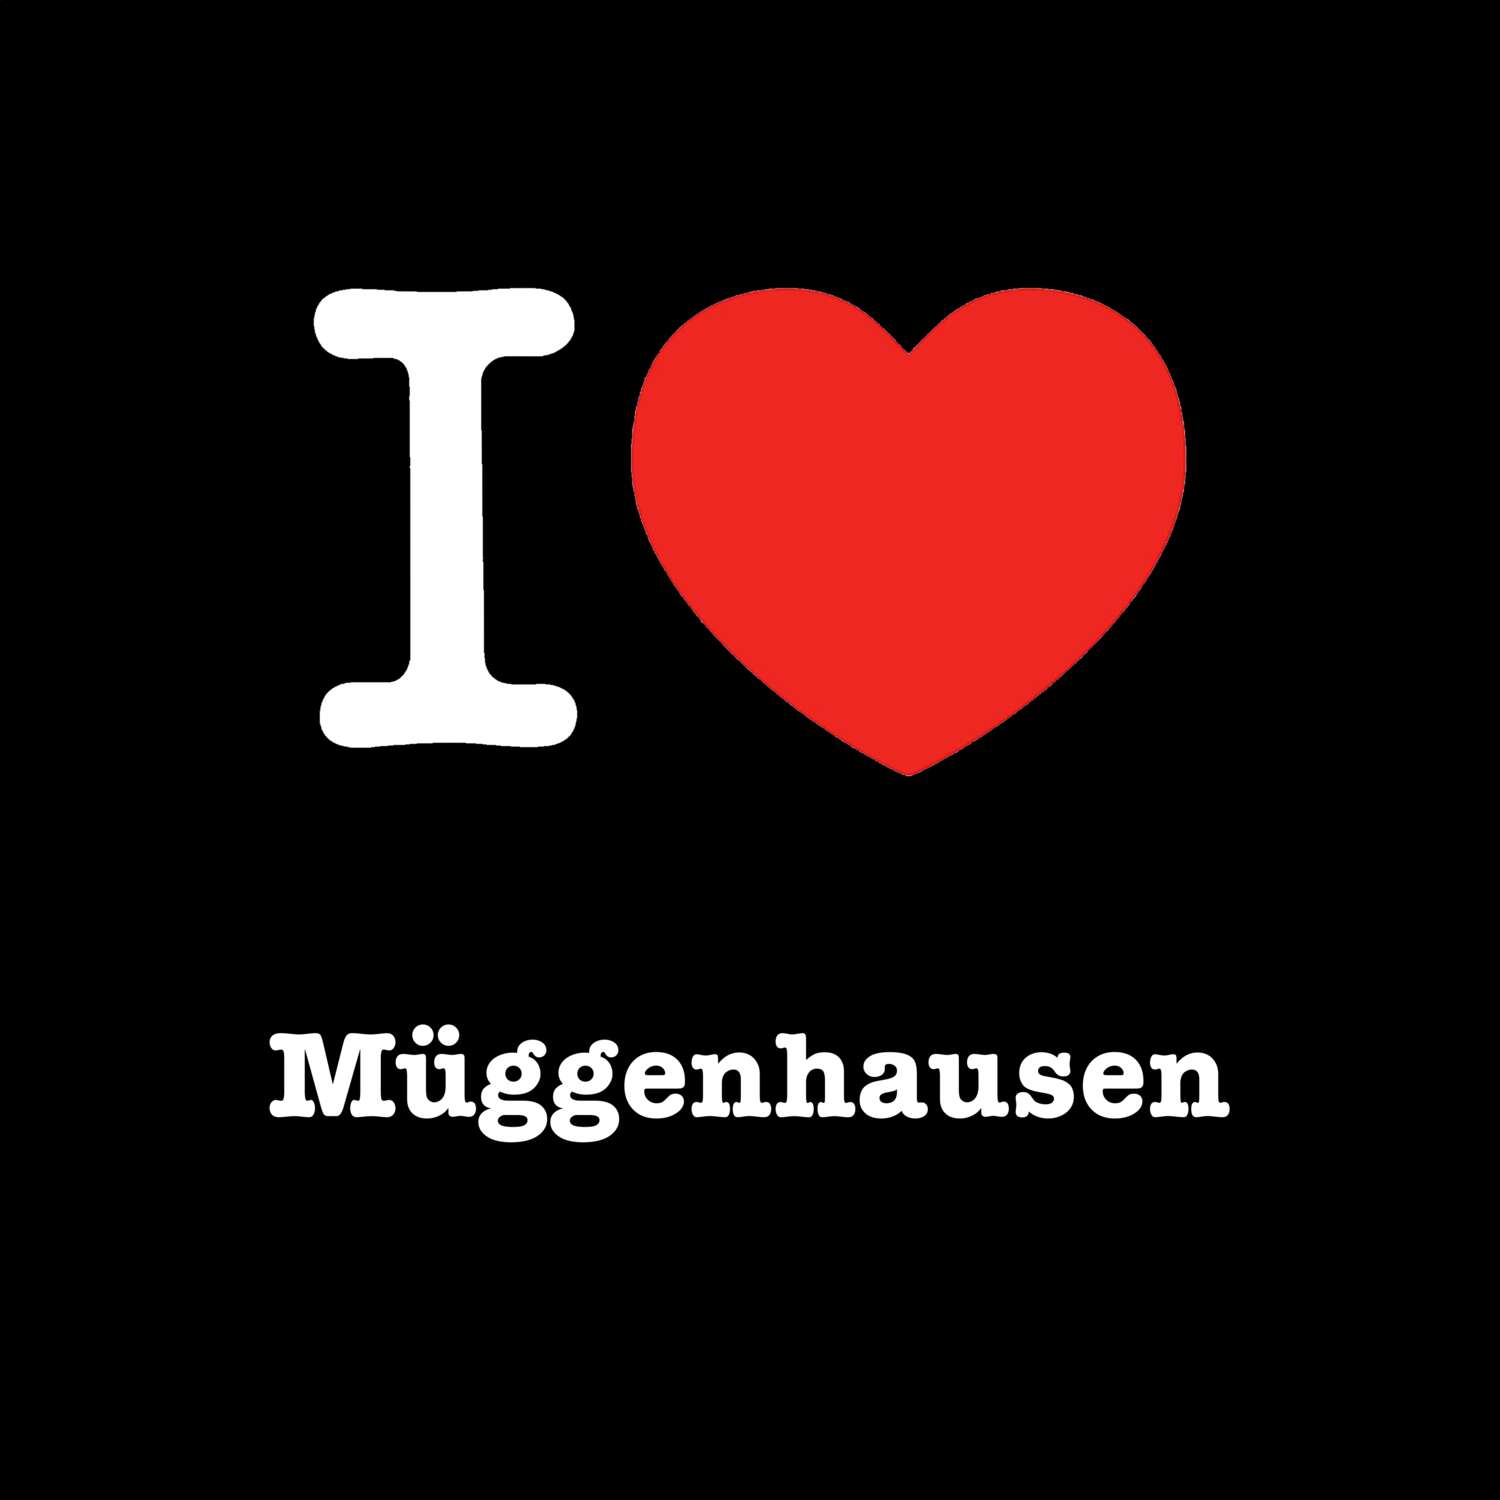 Müggenhausen T-Shirt »I love«